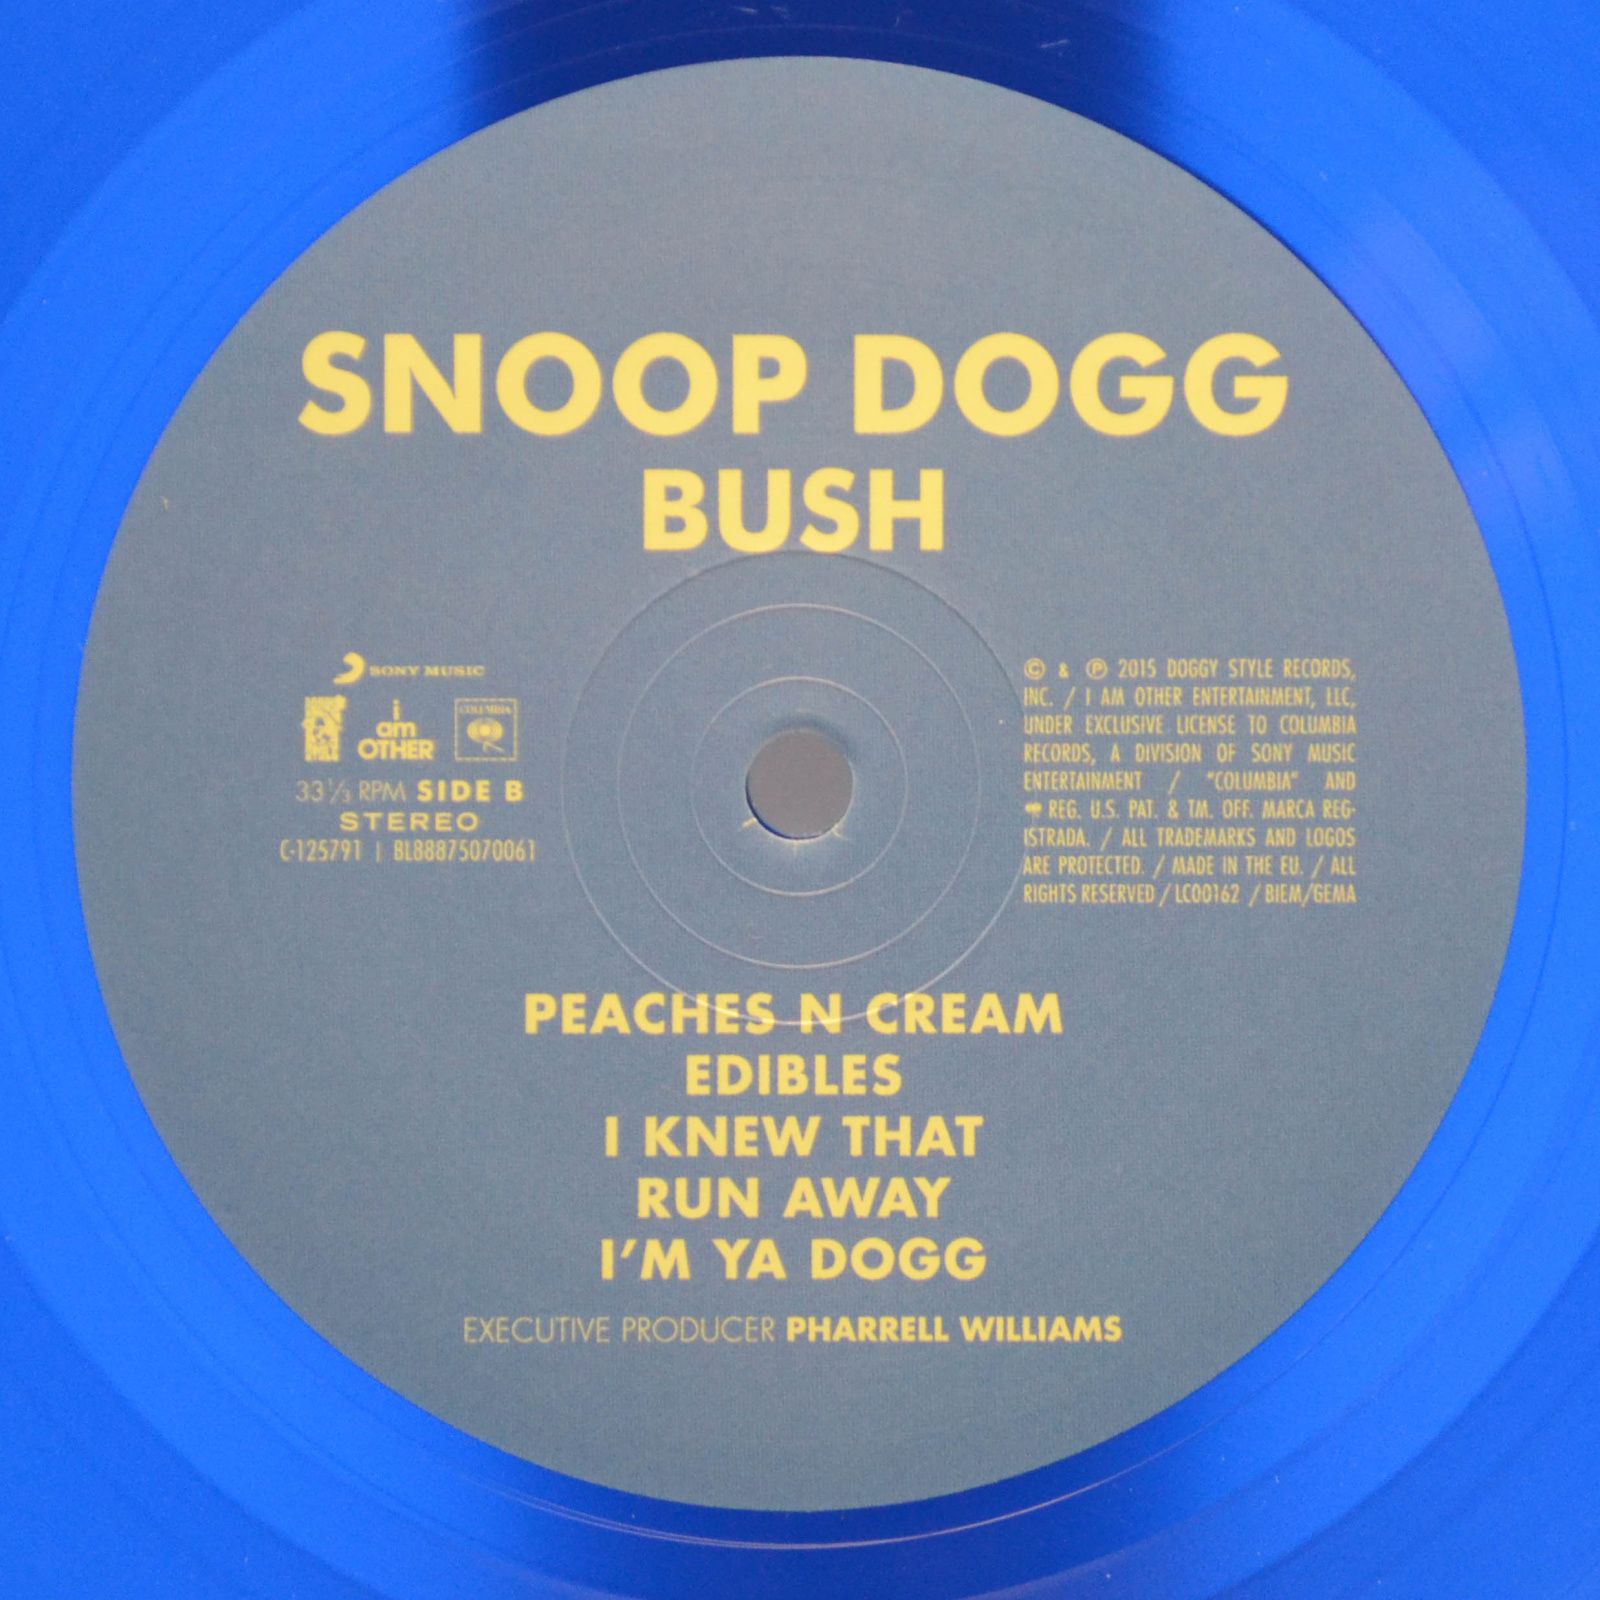 Snoop Dogg — Bush, 2015